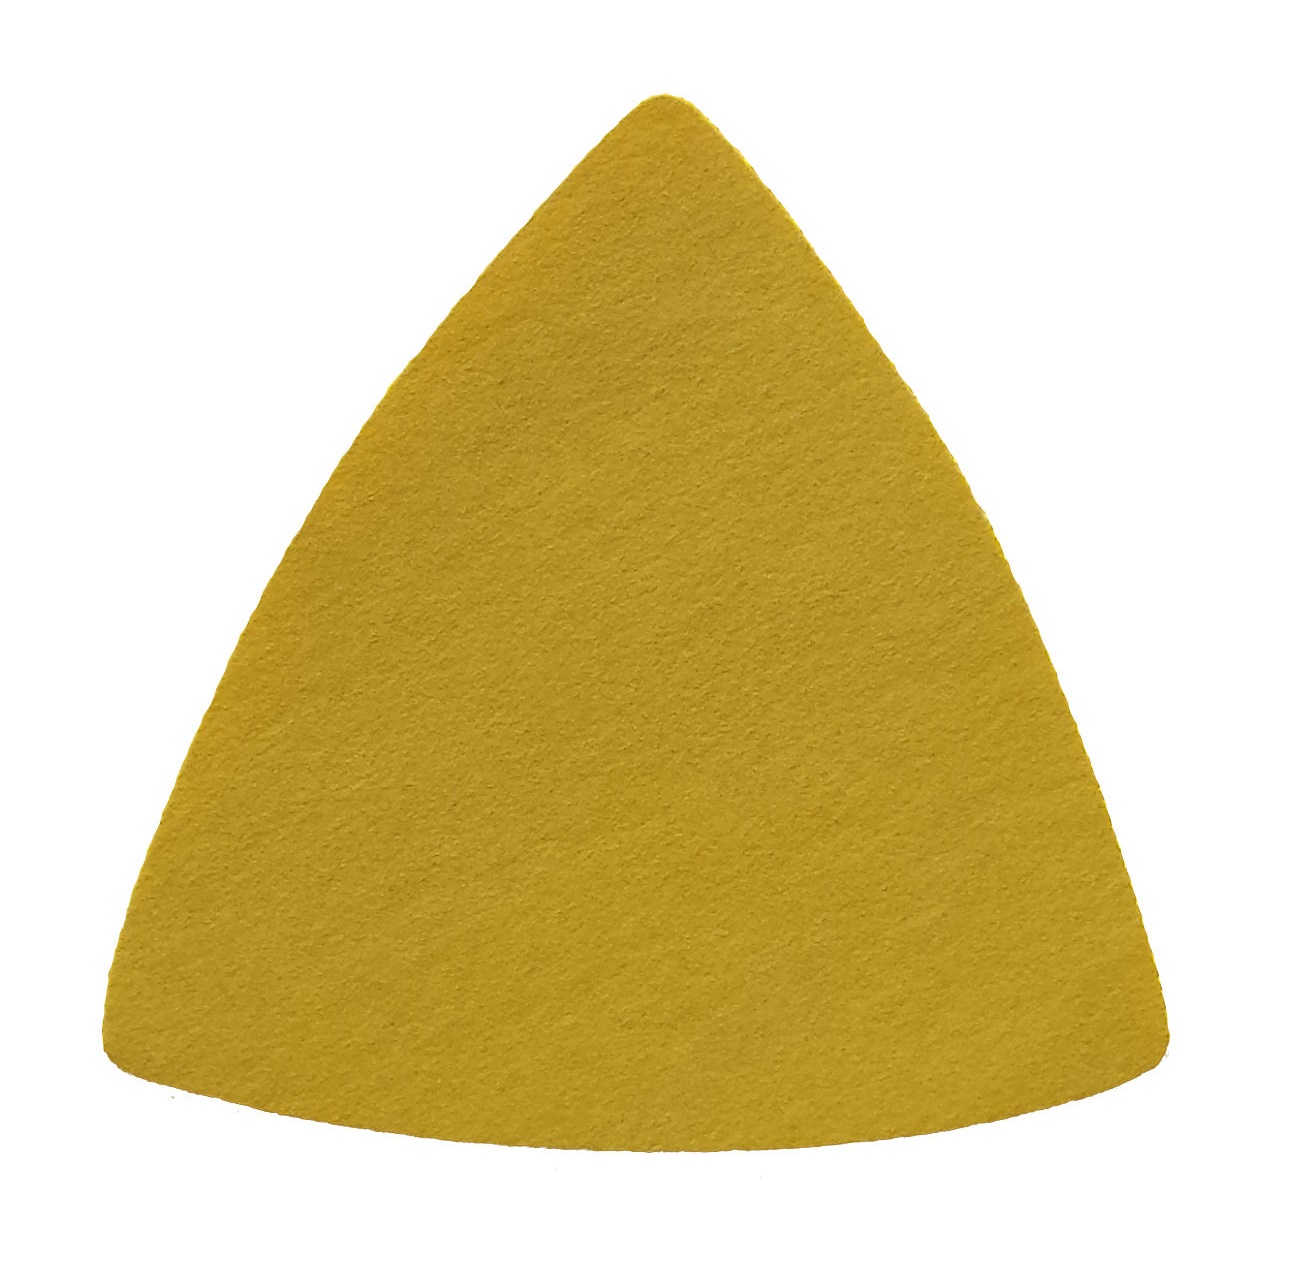 Triunghiuri abrazive - Triunghi abraziv Velcro 255P 79 0G P600, oldindustry.ro